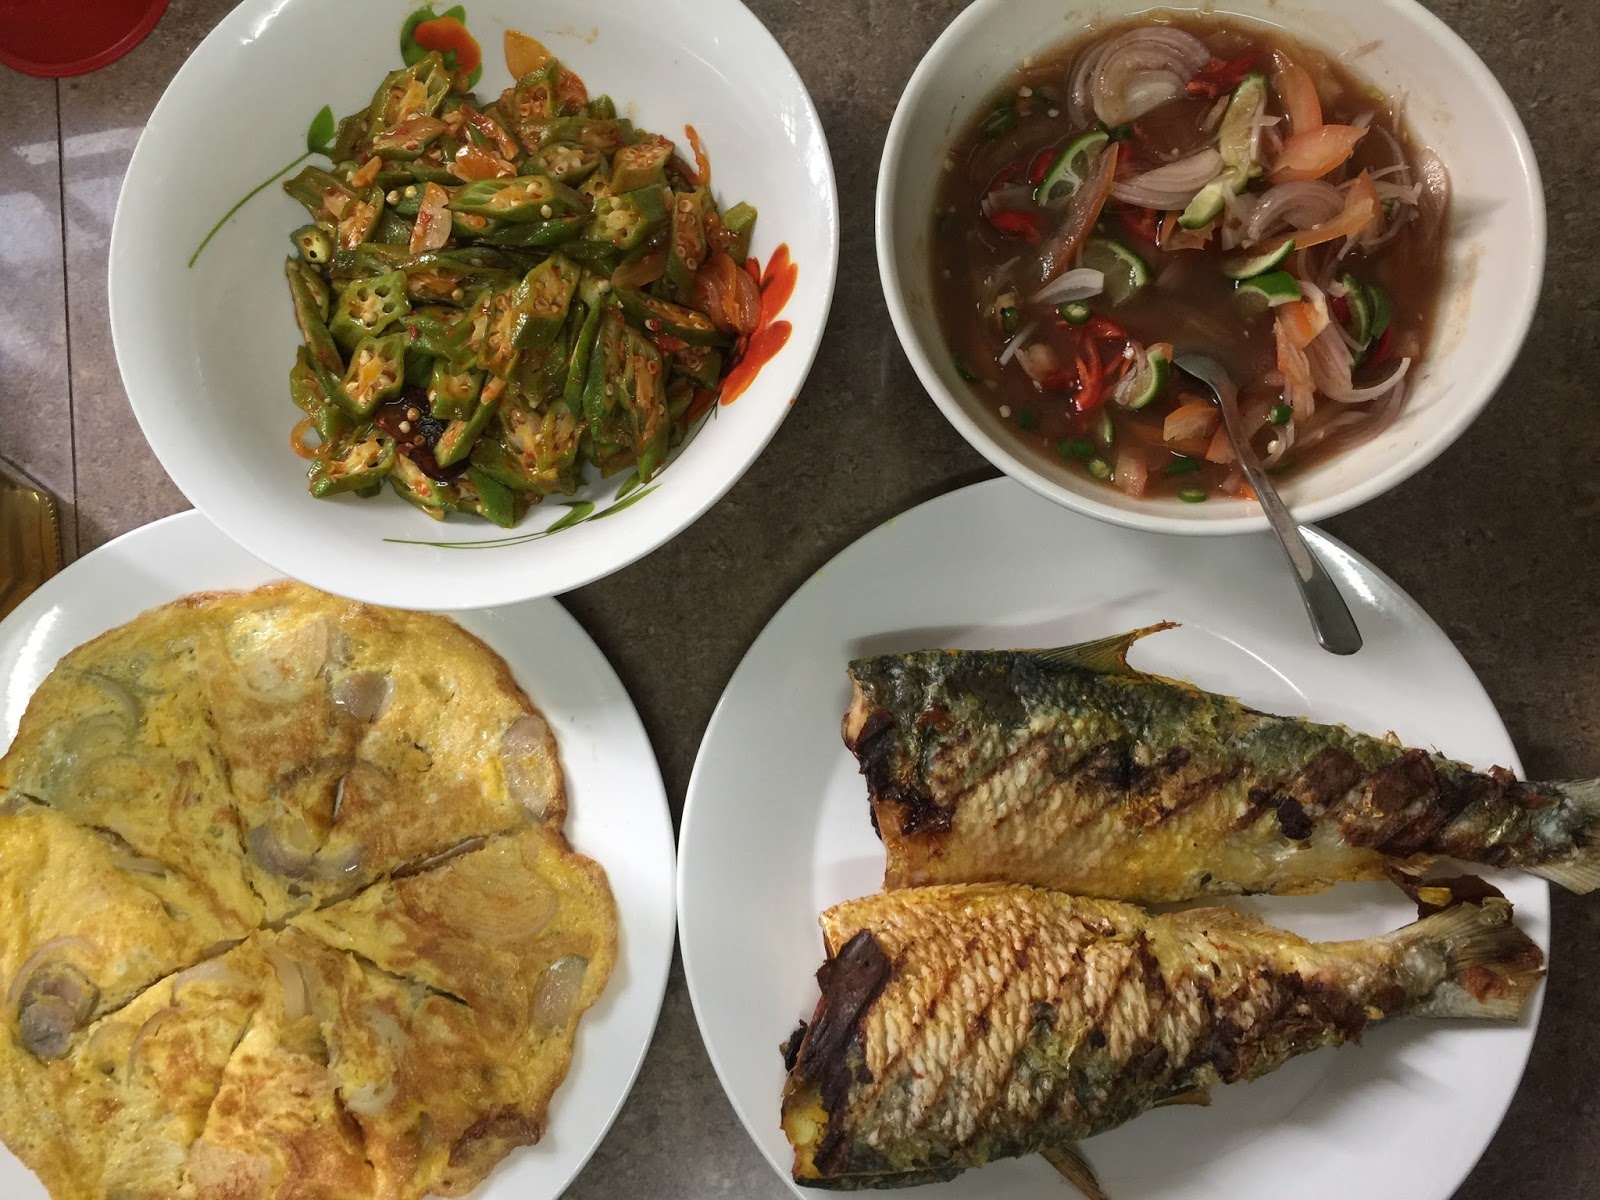 menu hujung minggu, ikan bakar sedap, air asam mudah, makan-makan bersama keluarga, food blogger